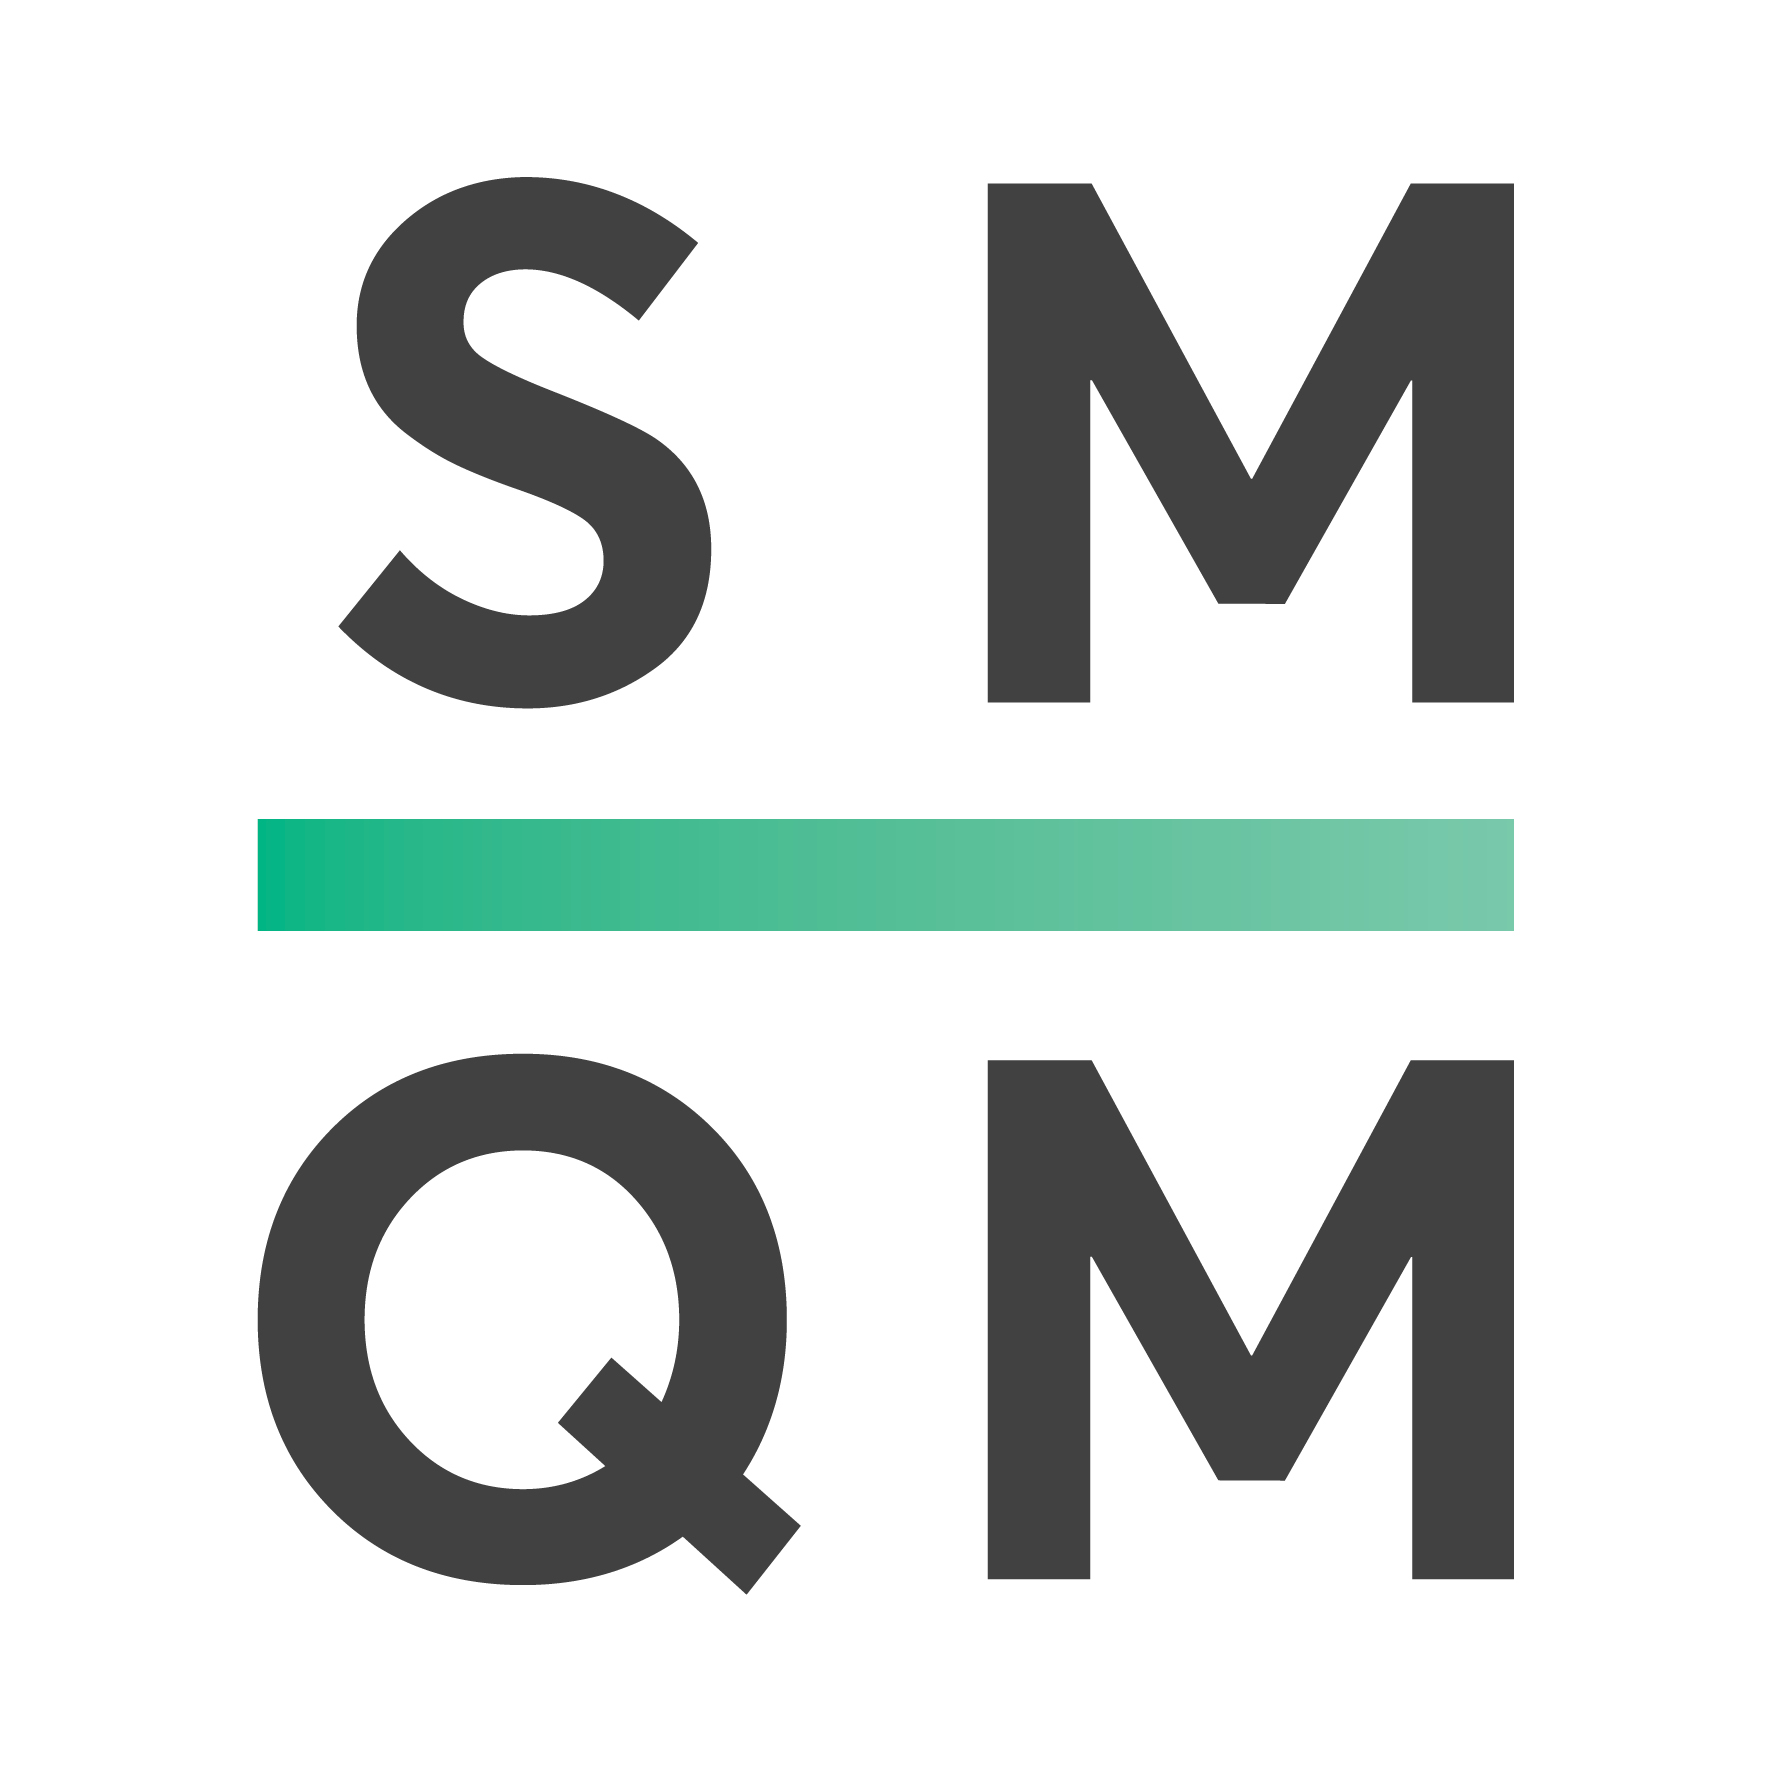 smqo logo